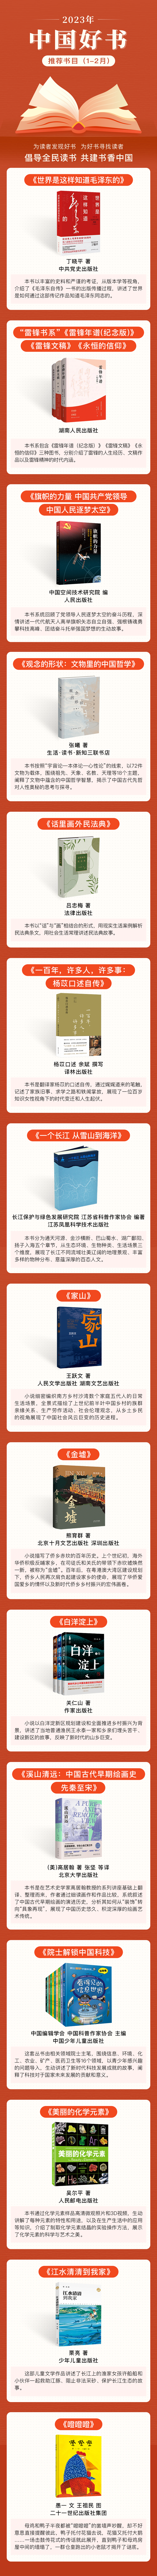 2023年“中国好书”推荐书目（1-2月）发布